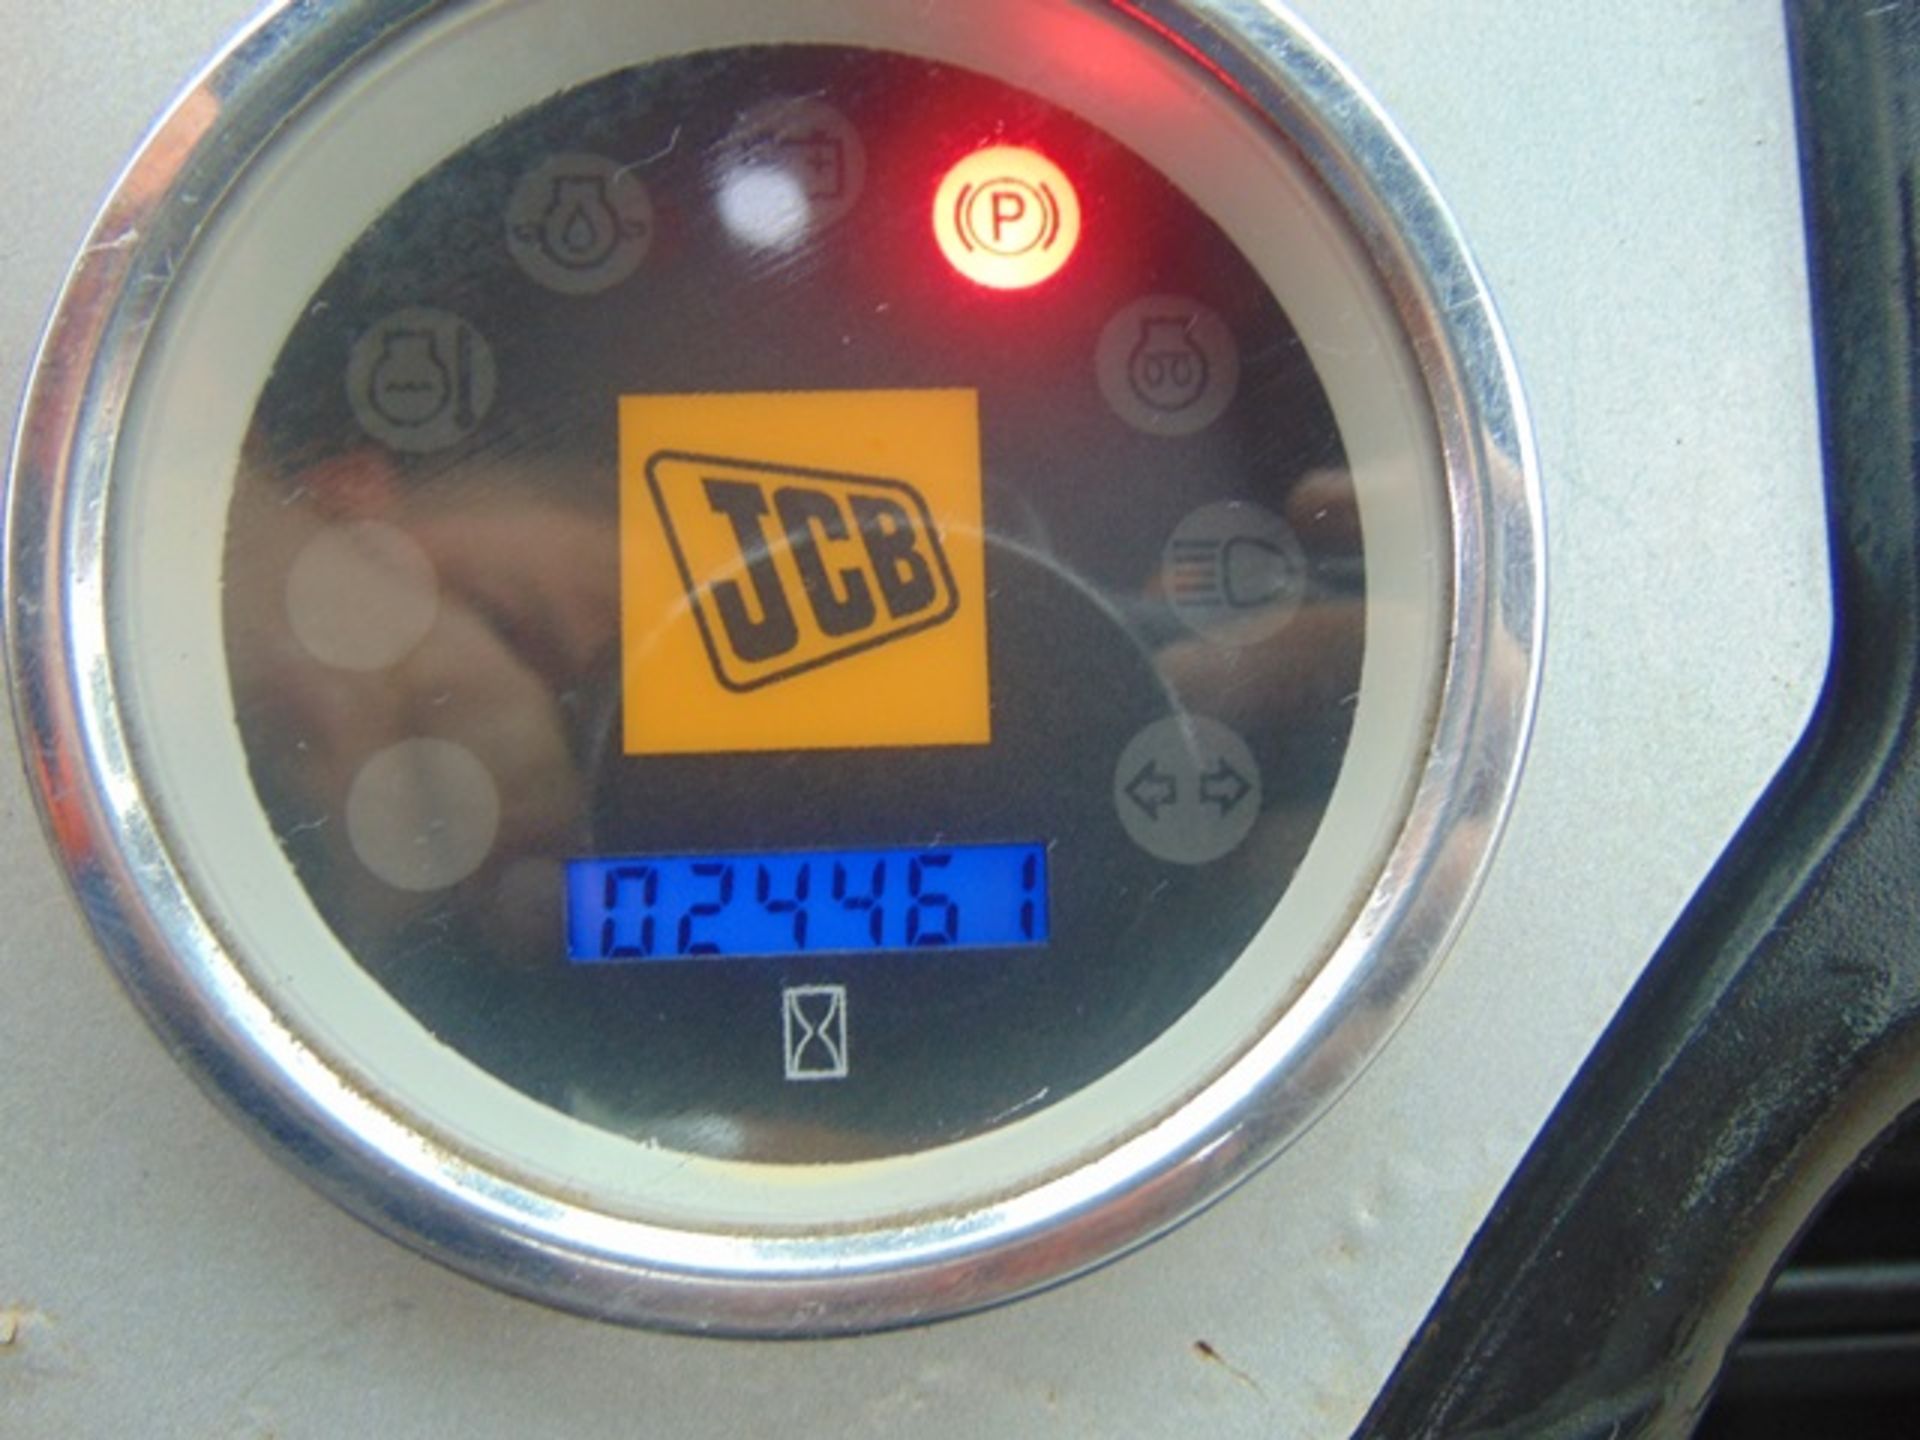 2015 JCB Workmax 4WD Diesel Utility Vehicle UTV - Bild 18 aus 18